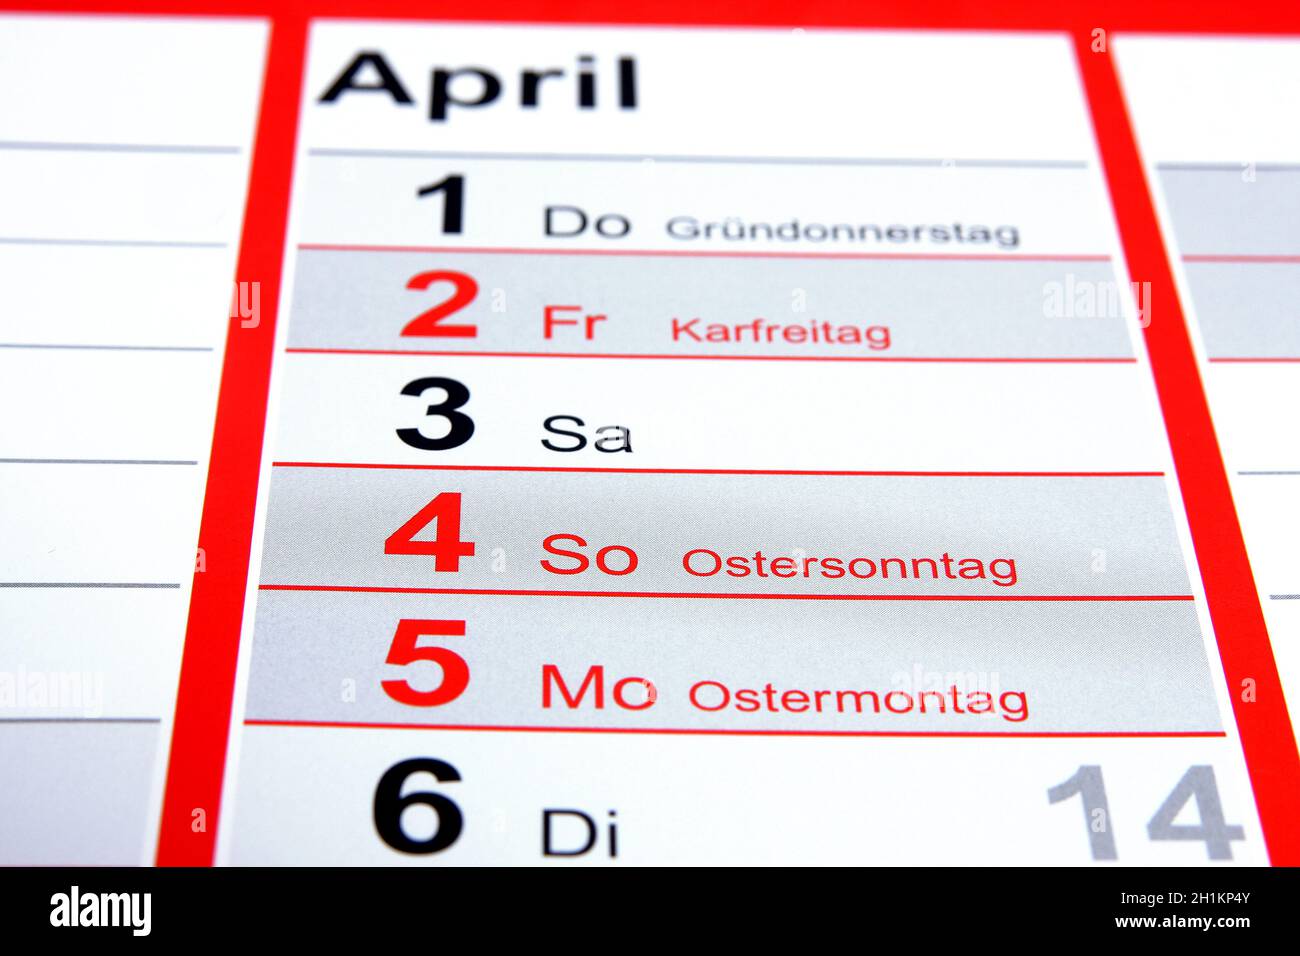 Gründonnerstag, Karfreitag, Ostersonntag, Ostermontag Stock Photo